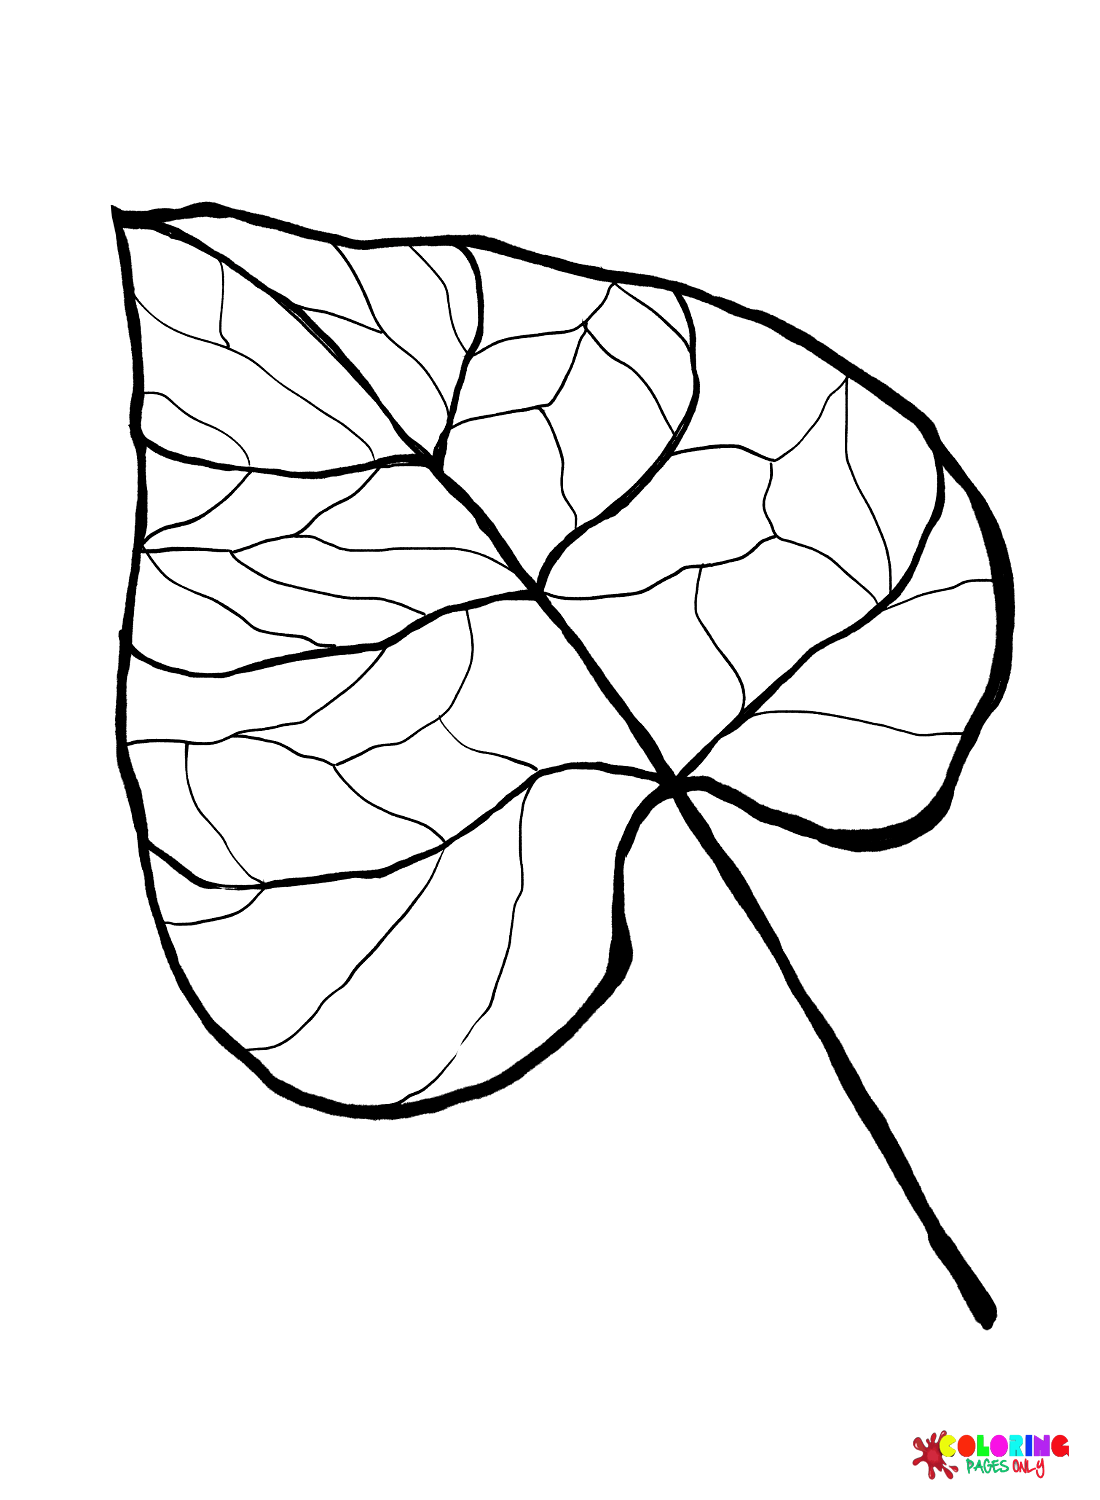 Foglia di Catalpa dalle foglie